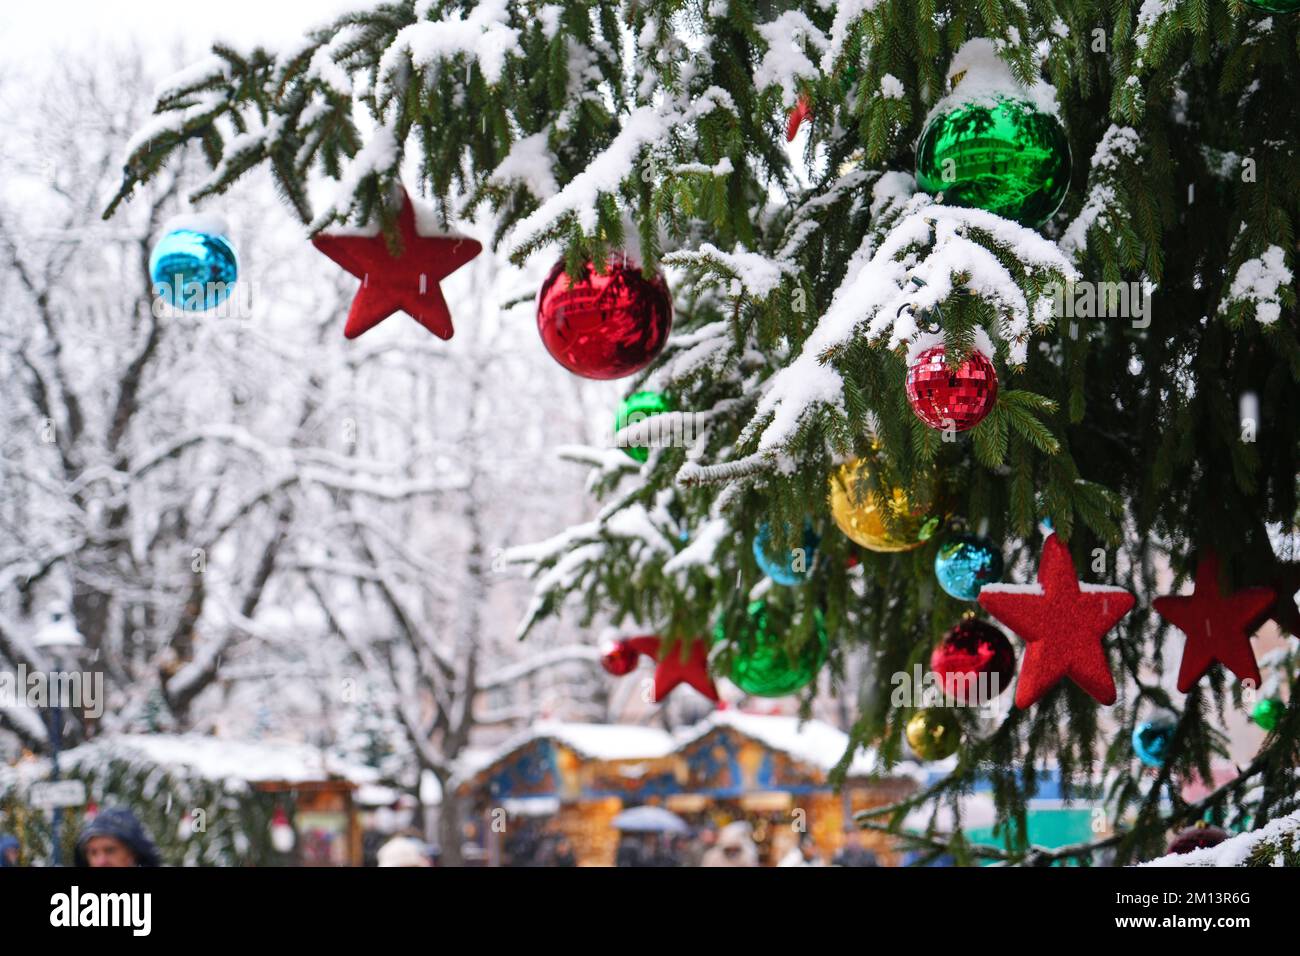 La décoration du marché de Noël est un symbole des vacances d'hiver et du nouvel an. Colmar. Alsace. France. Banque D'Images